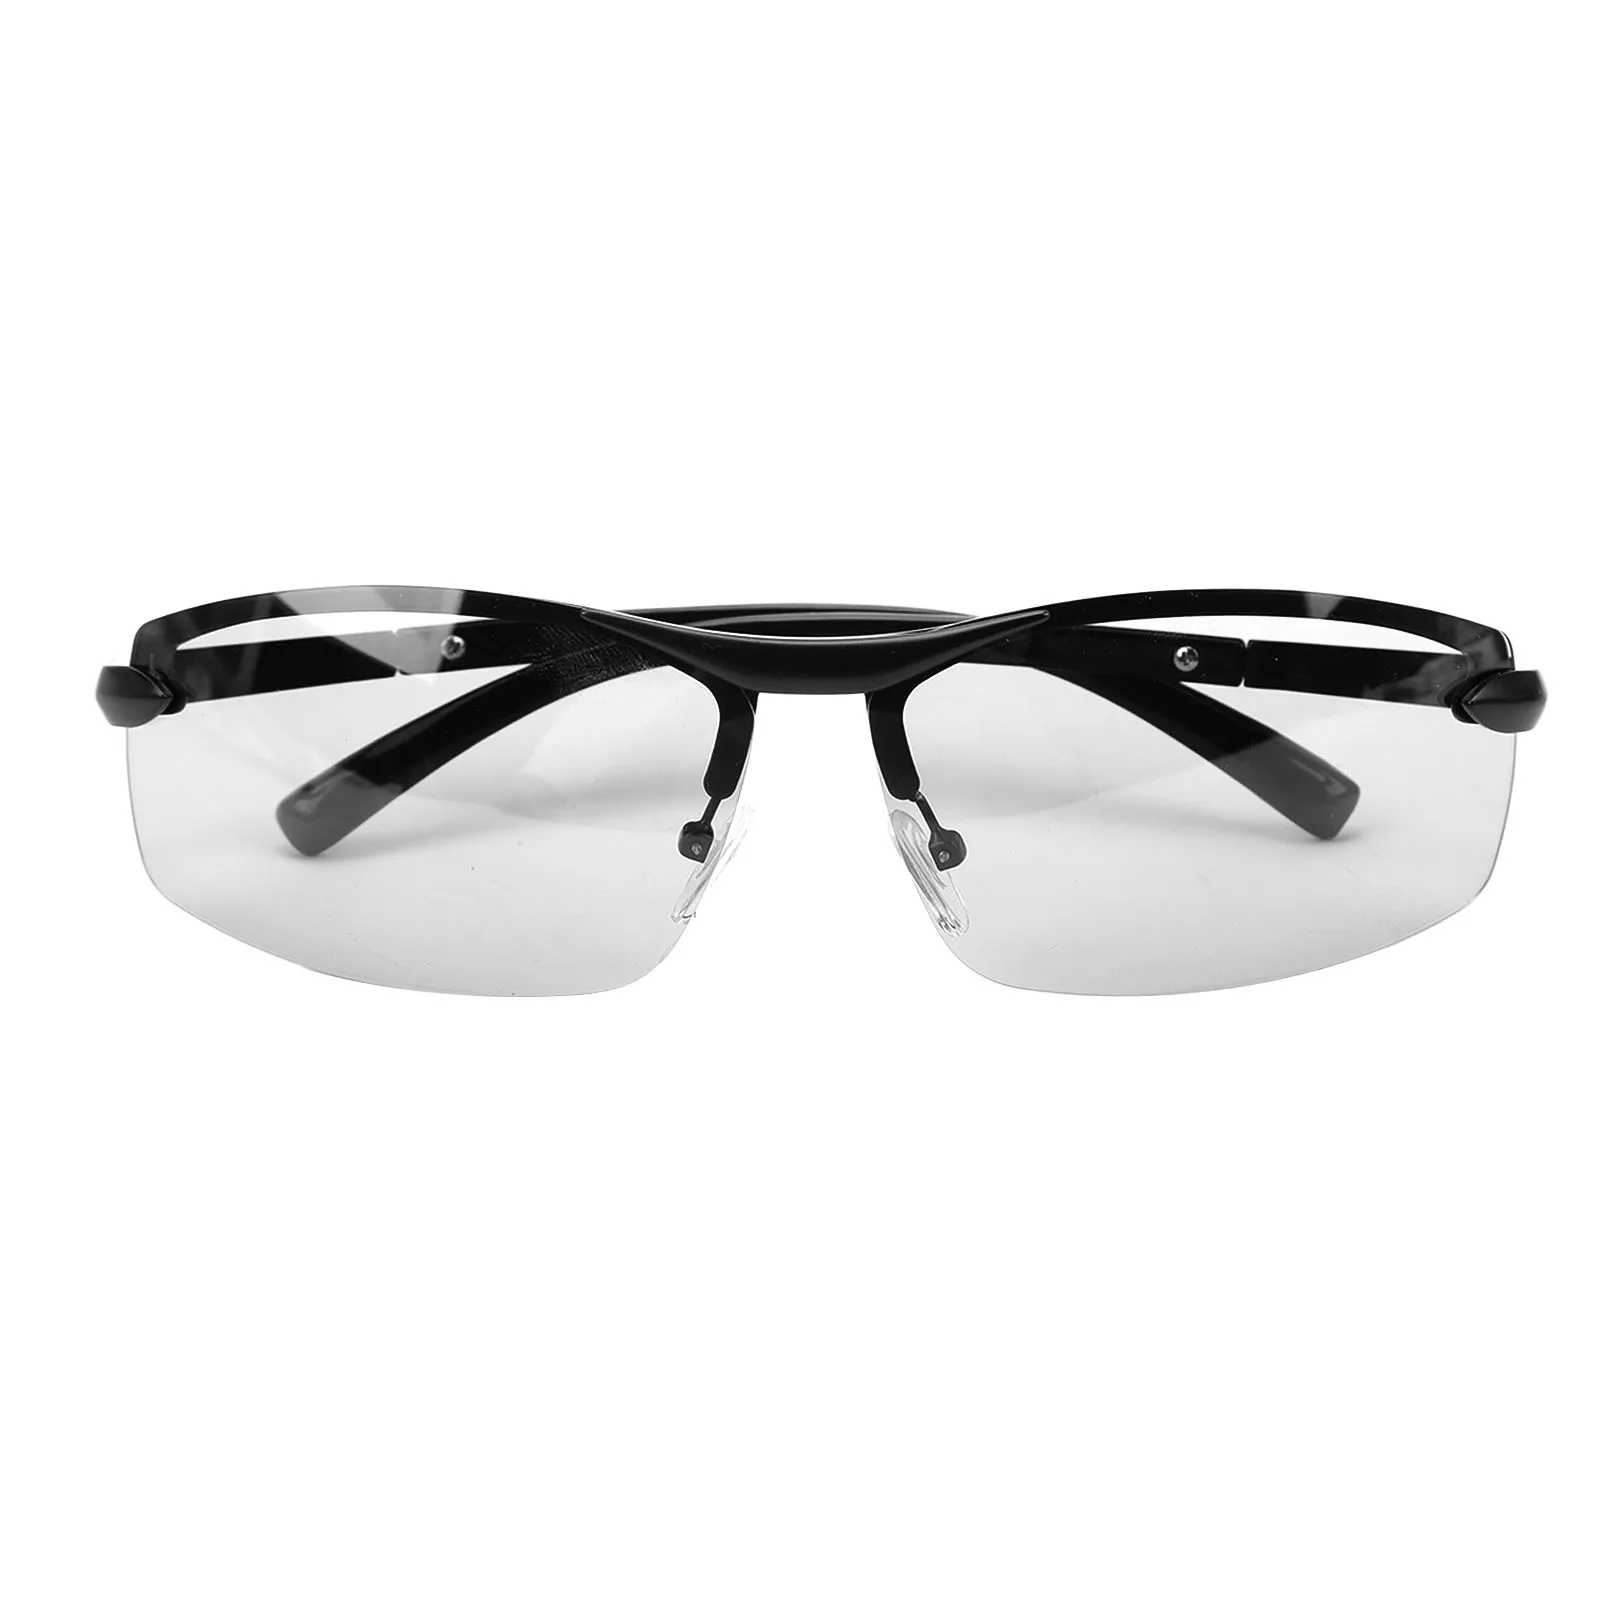 Очки для верховой езды Поляризованные солнцезащитные очки с защитой от ультрафиолета, линзы для изменения цвета, очки для рыбалки, путешествий, езды на велосипеде, вождения, спорта на открытом воздухе